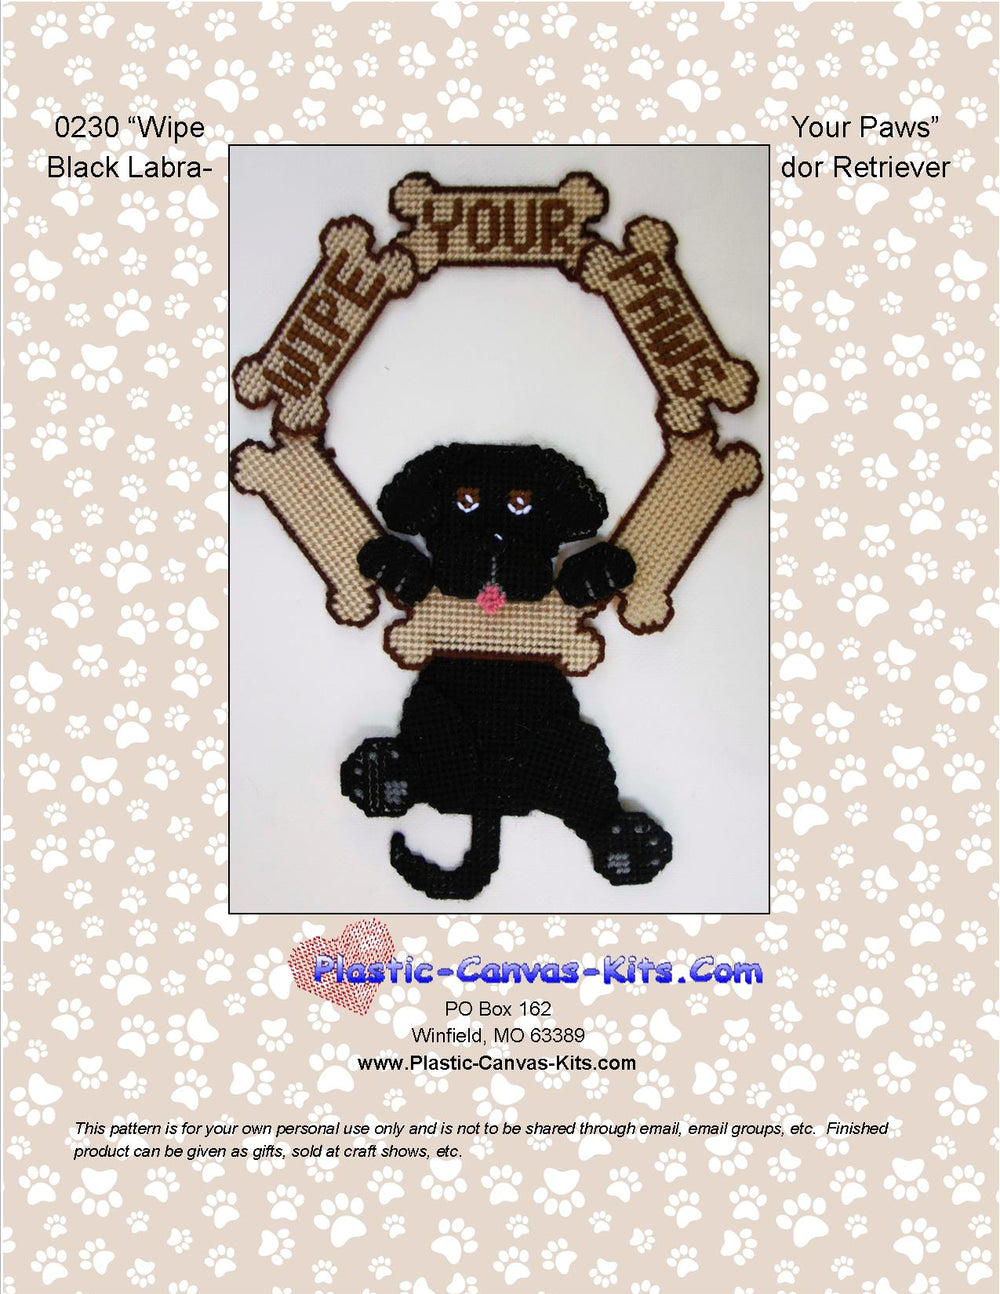 Black Labrador Retriever-Wipe Your Paws